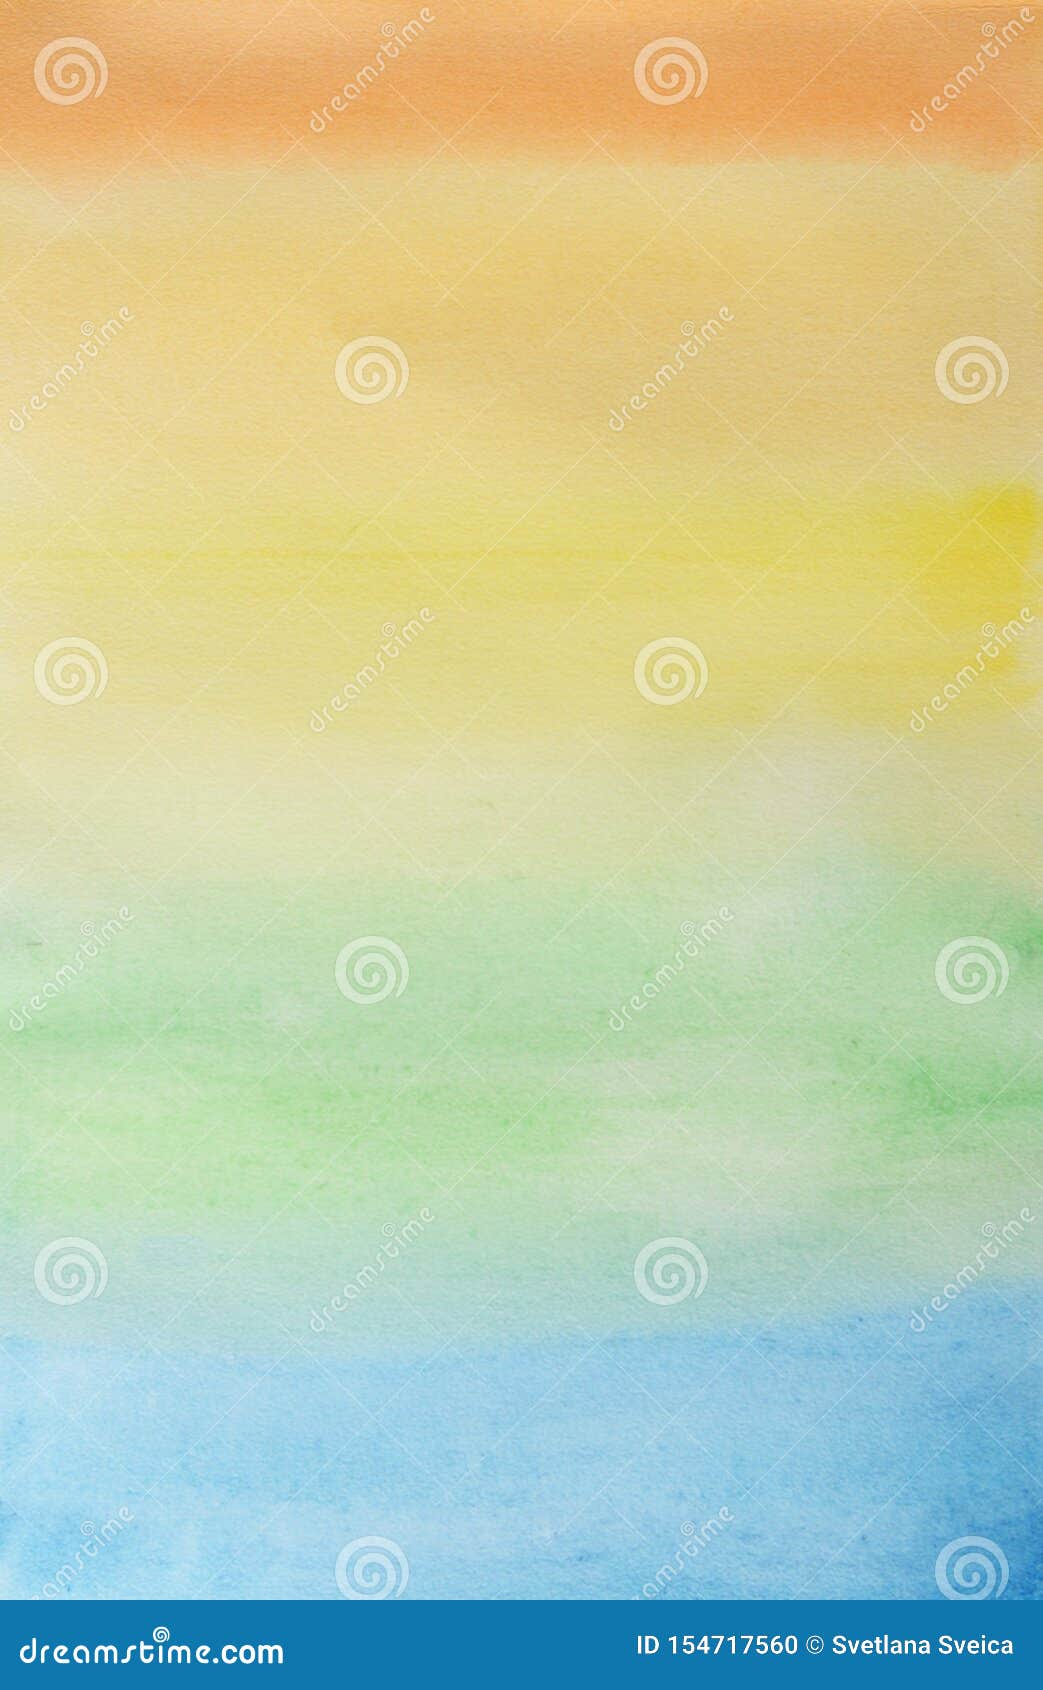 抽象条纹彩虹水彩背景多色水彩色壁纸黄色 橙色 绿色 浅蓝色 蓝色